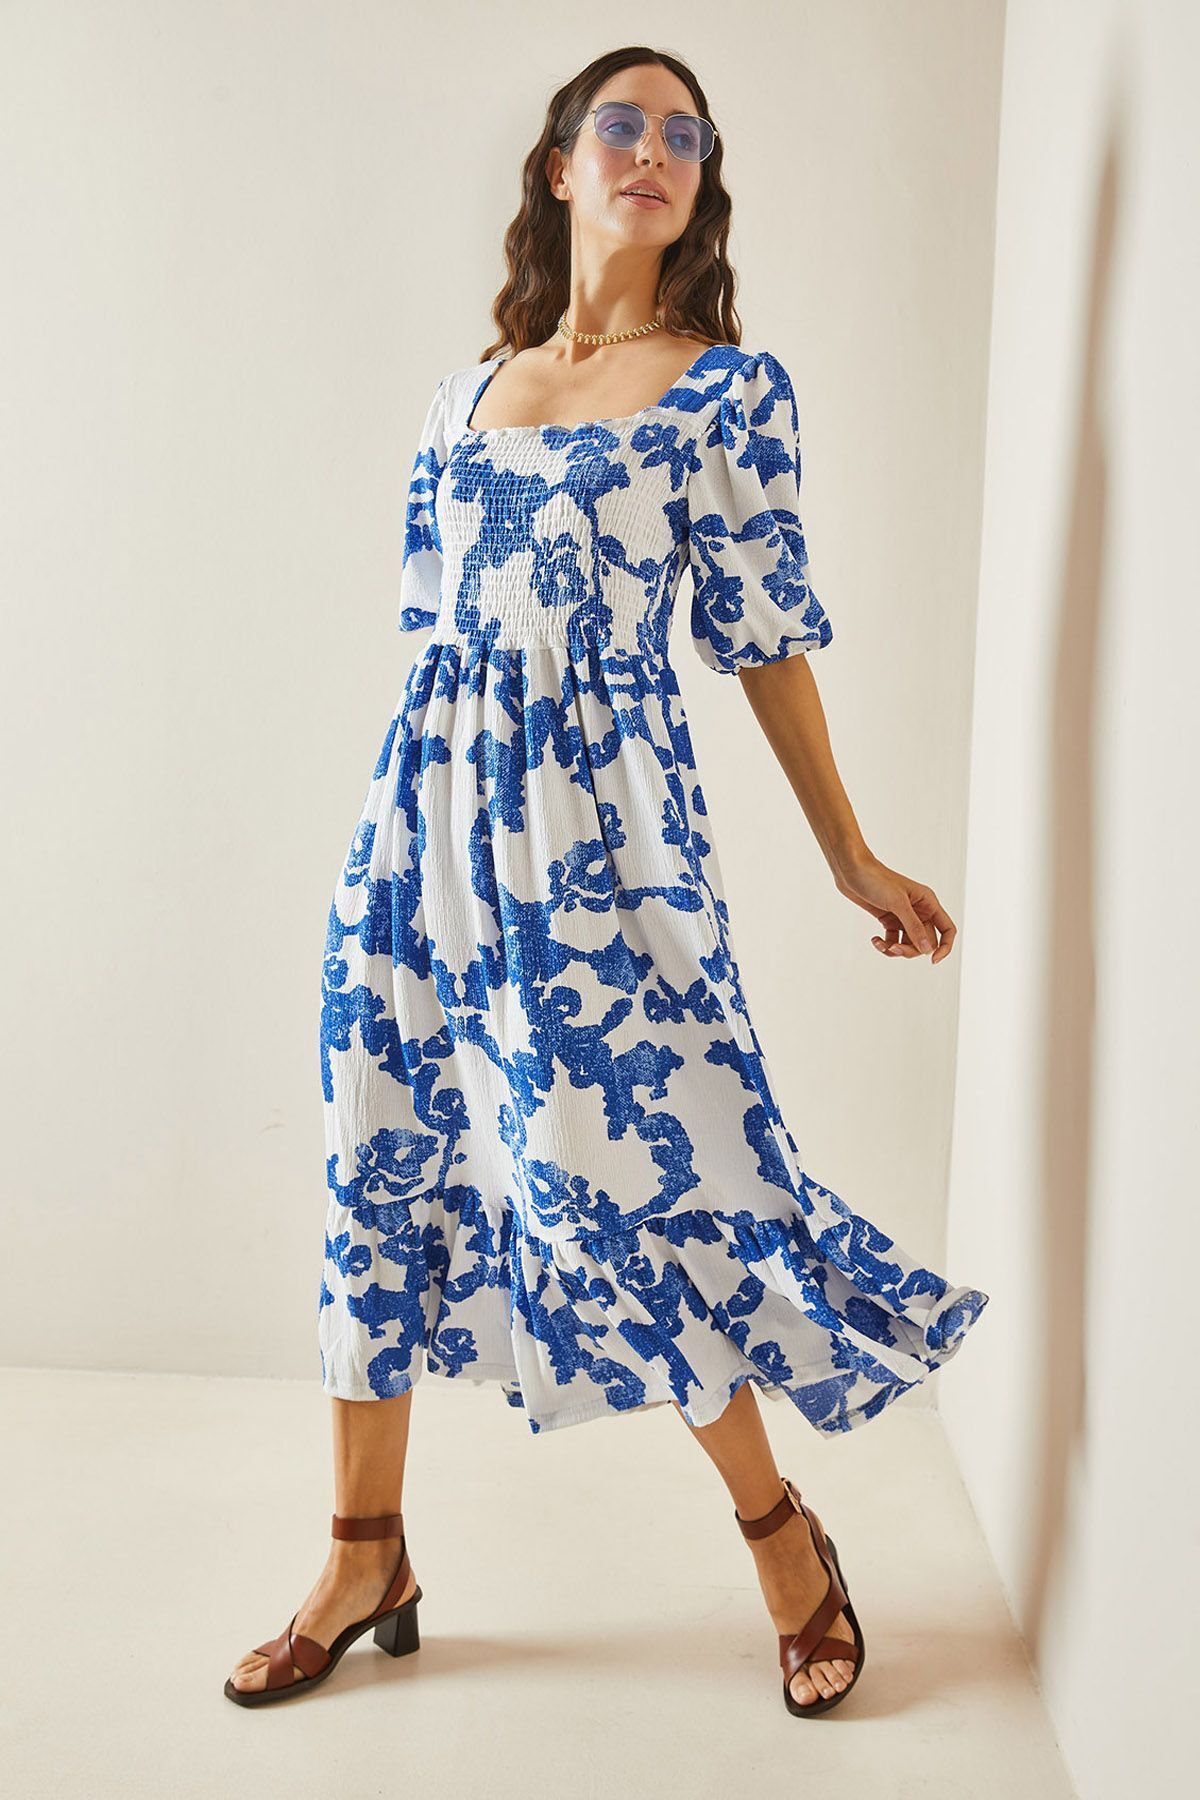 XHAN Mavi Desenli Gipe Detaylı Etek Ucu Fırfırlı Örme Elbise 5YXK6-48509-12